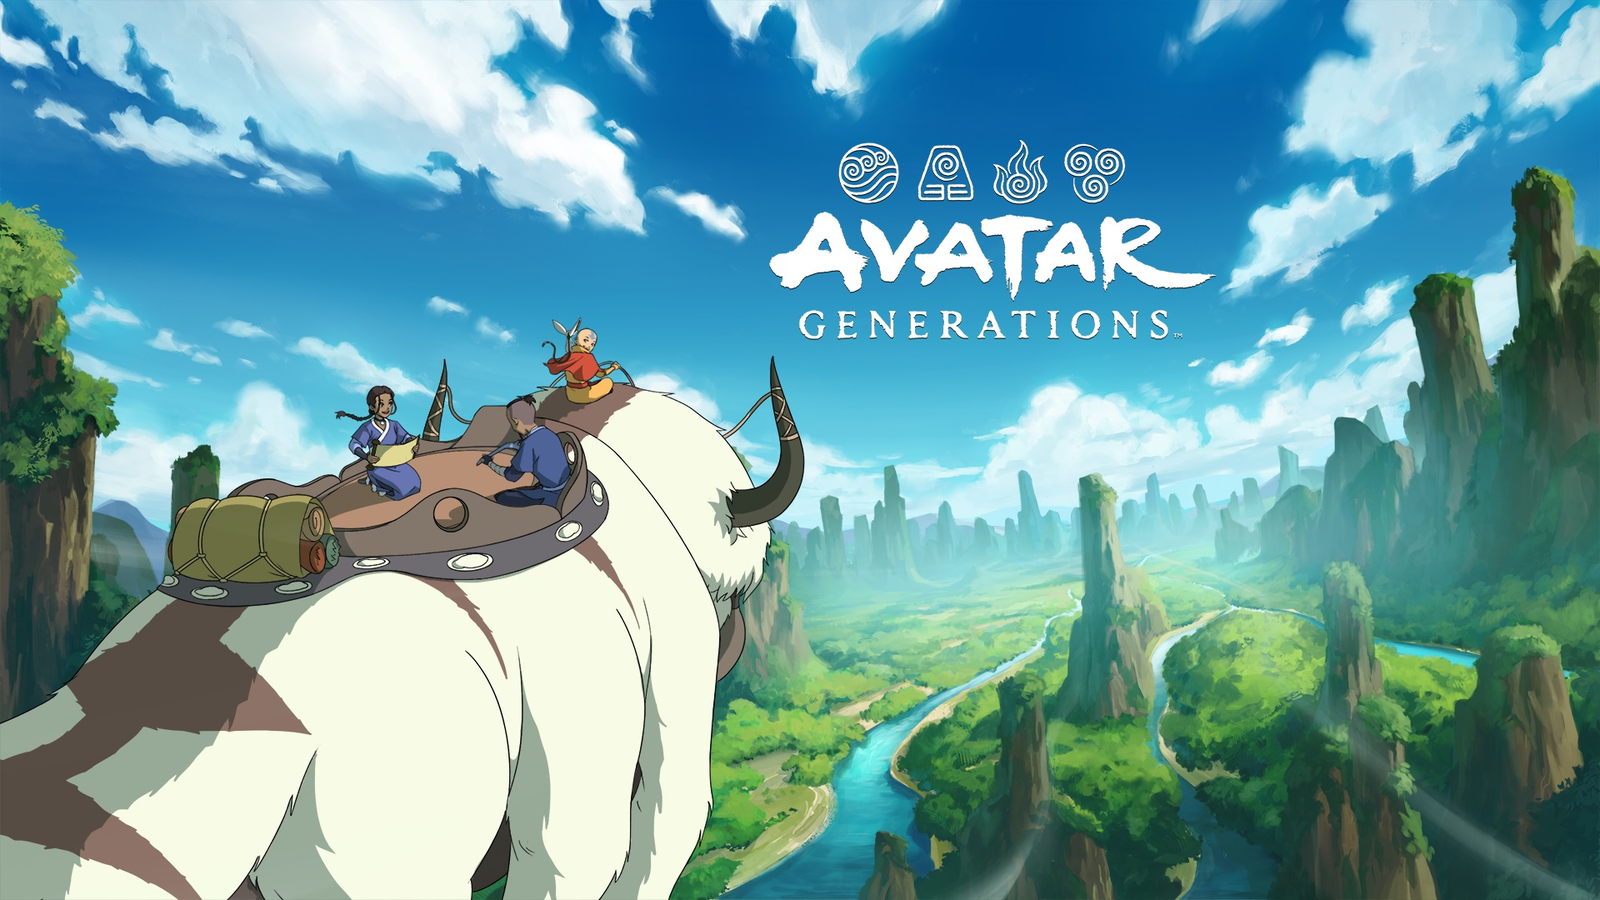 Mobile Avatar Game 2024 Upgrade: Trò chơi Avatar trên điện thoại di động cũng đang được nâng cấp để đáp ứng nhu cầu ngày càng tăng của người chơi. Với đồ họa sắc nét và điều khiển dễ dàng, bạn sẽ được trải nghiệm nhiều cuộc phiêu lưu đầy kịch tính và thú vị trong thế giới Avatar. Hãy tải ngay và khám phá thế giới Avatar trên điện thoại của bạn!